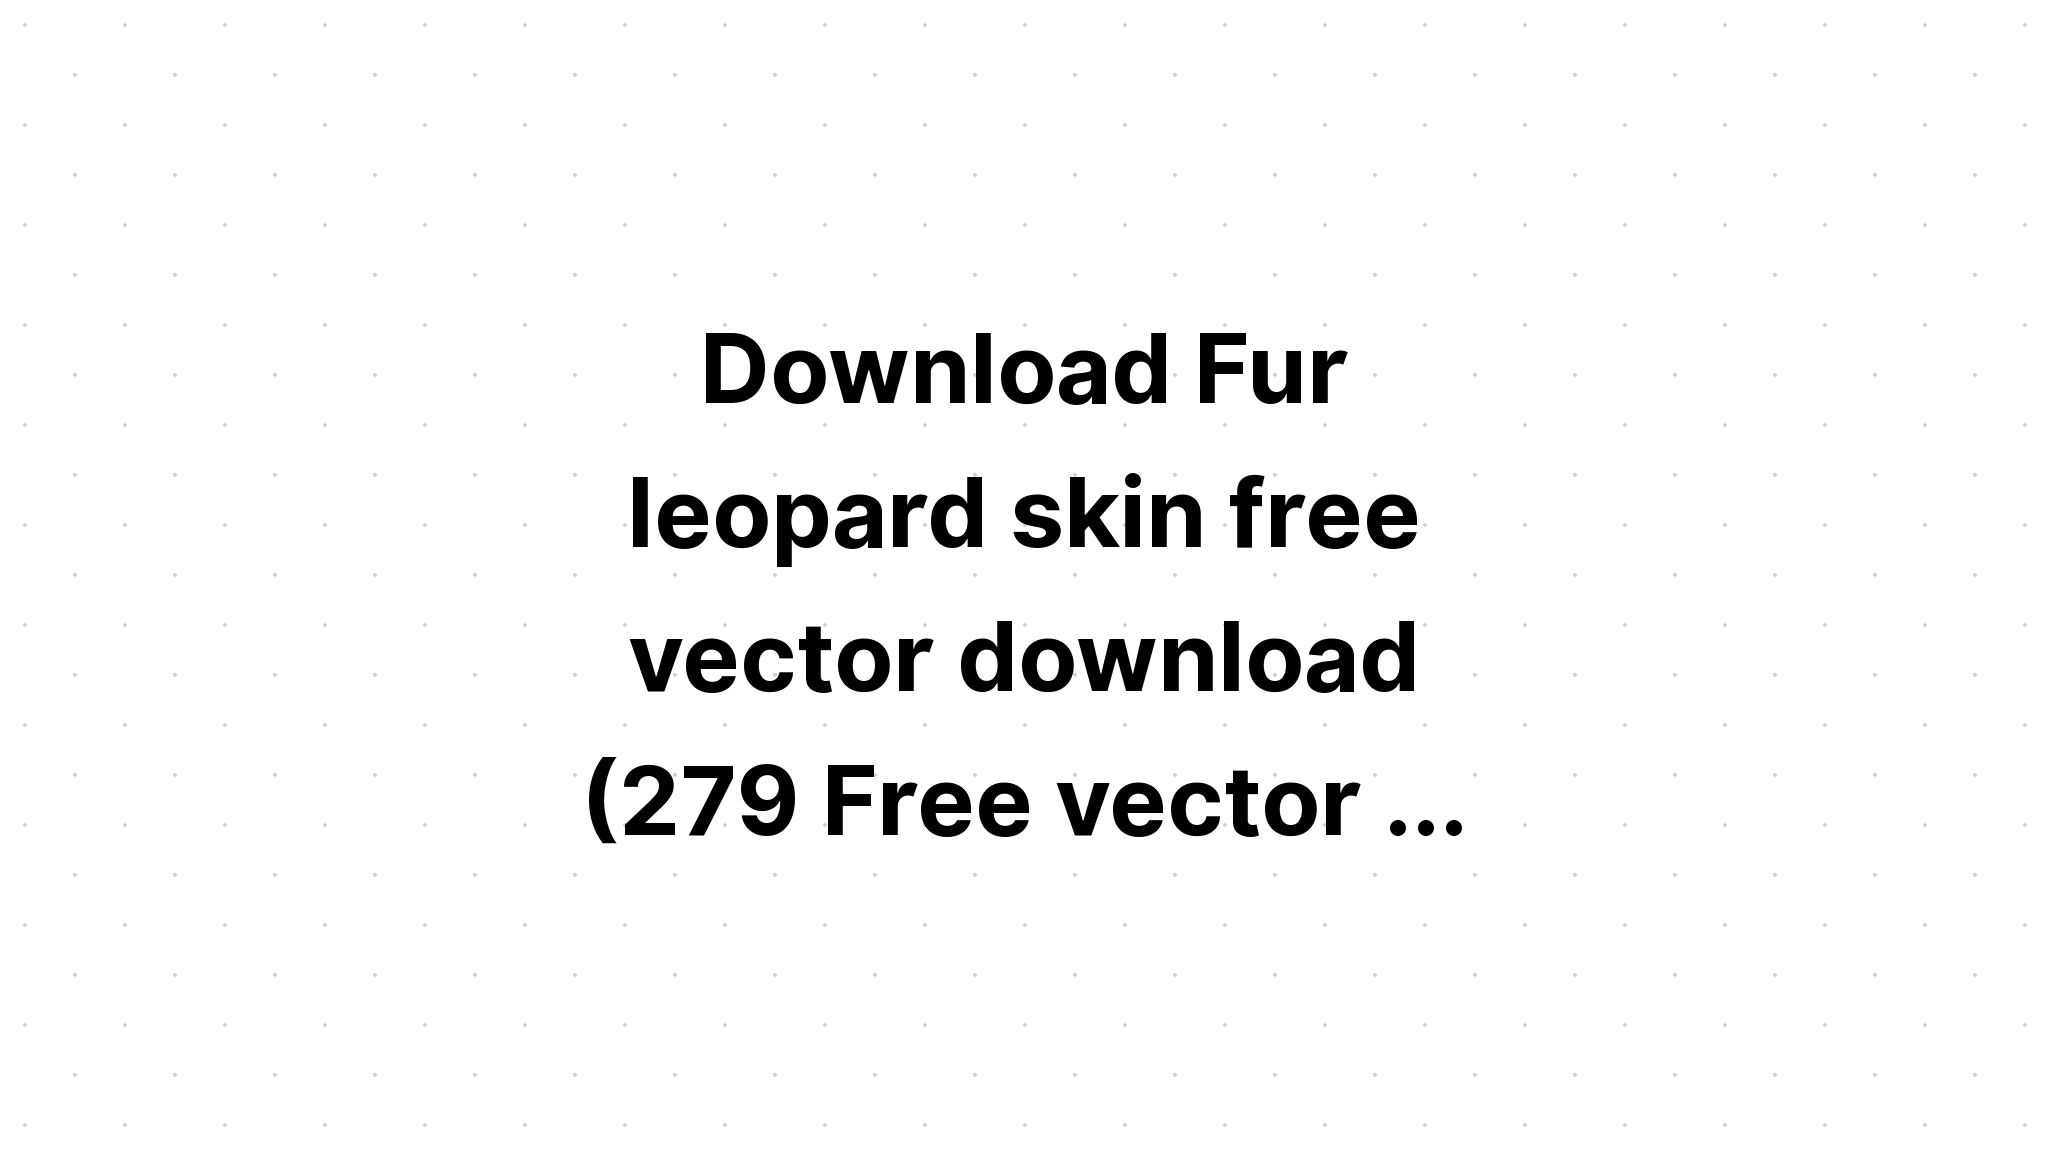 Download Leopard Font Separate Svg Cheetah Skin SVG File